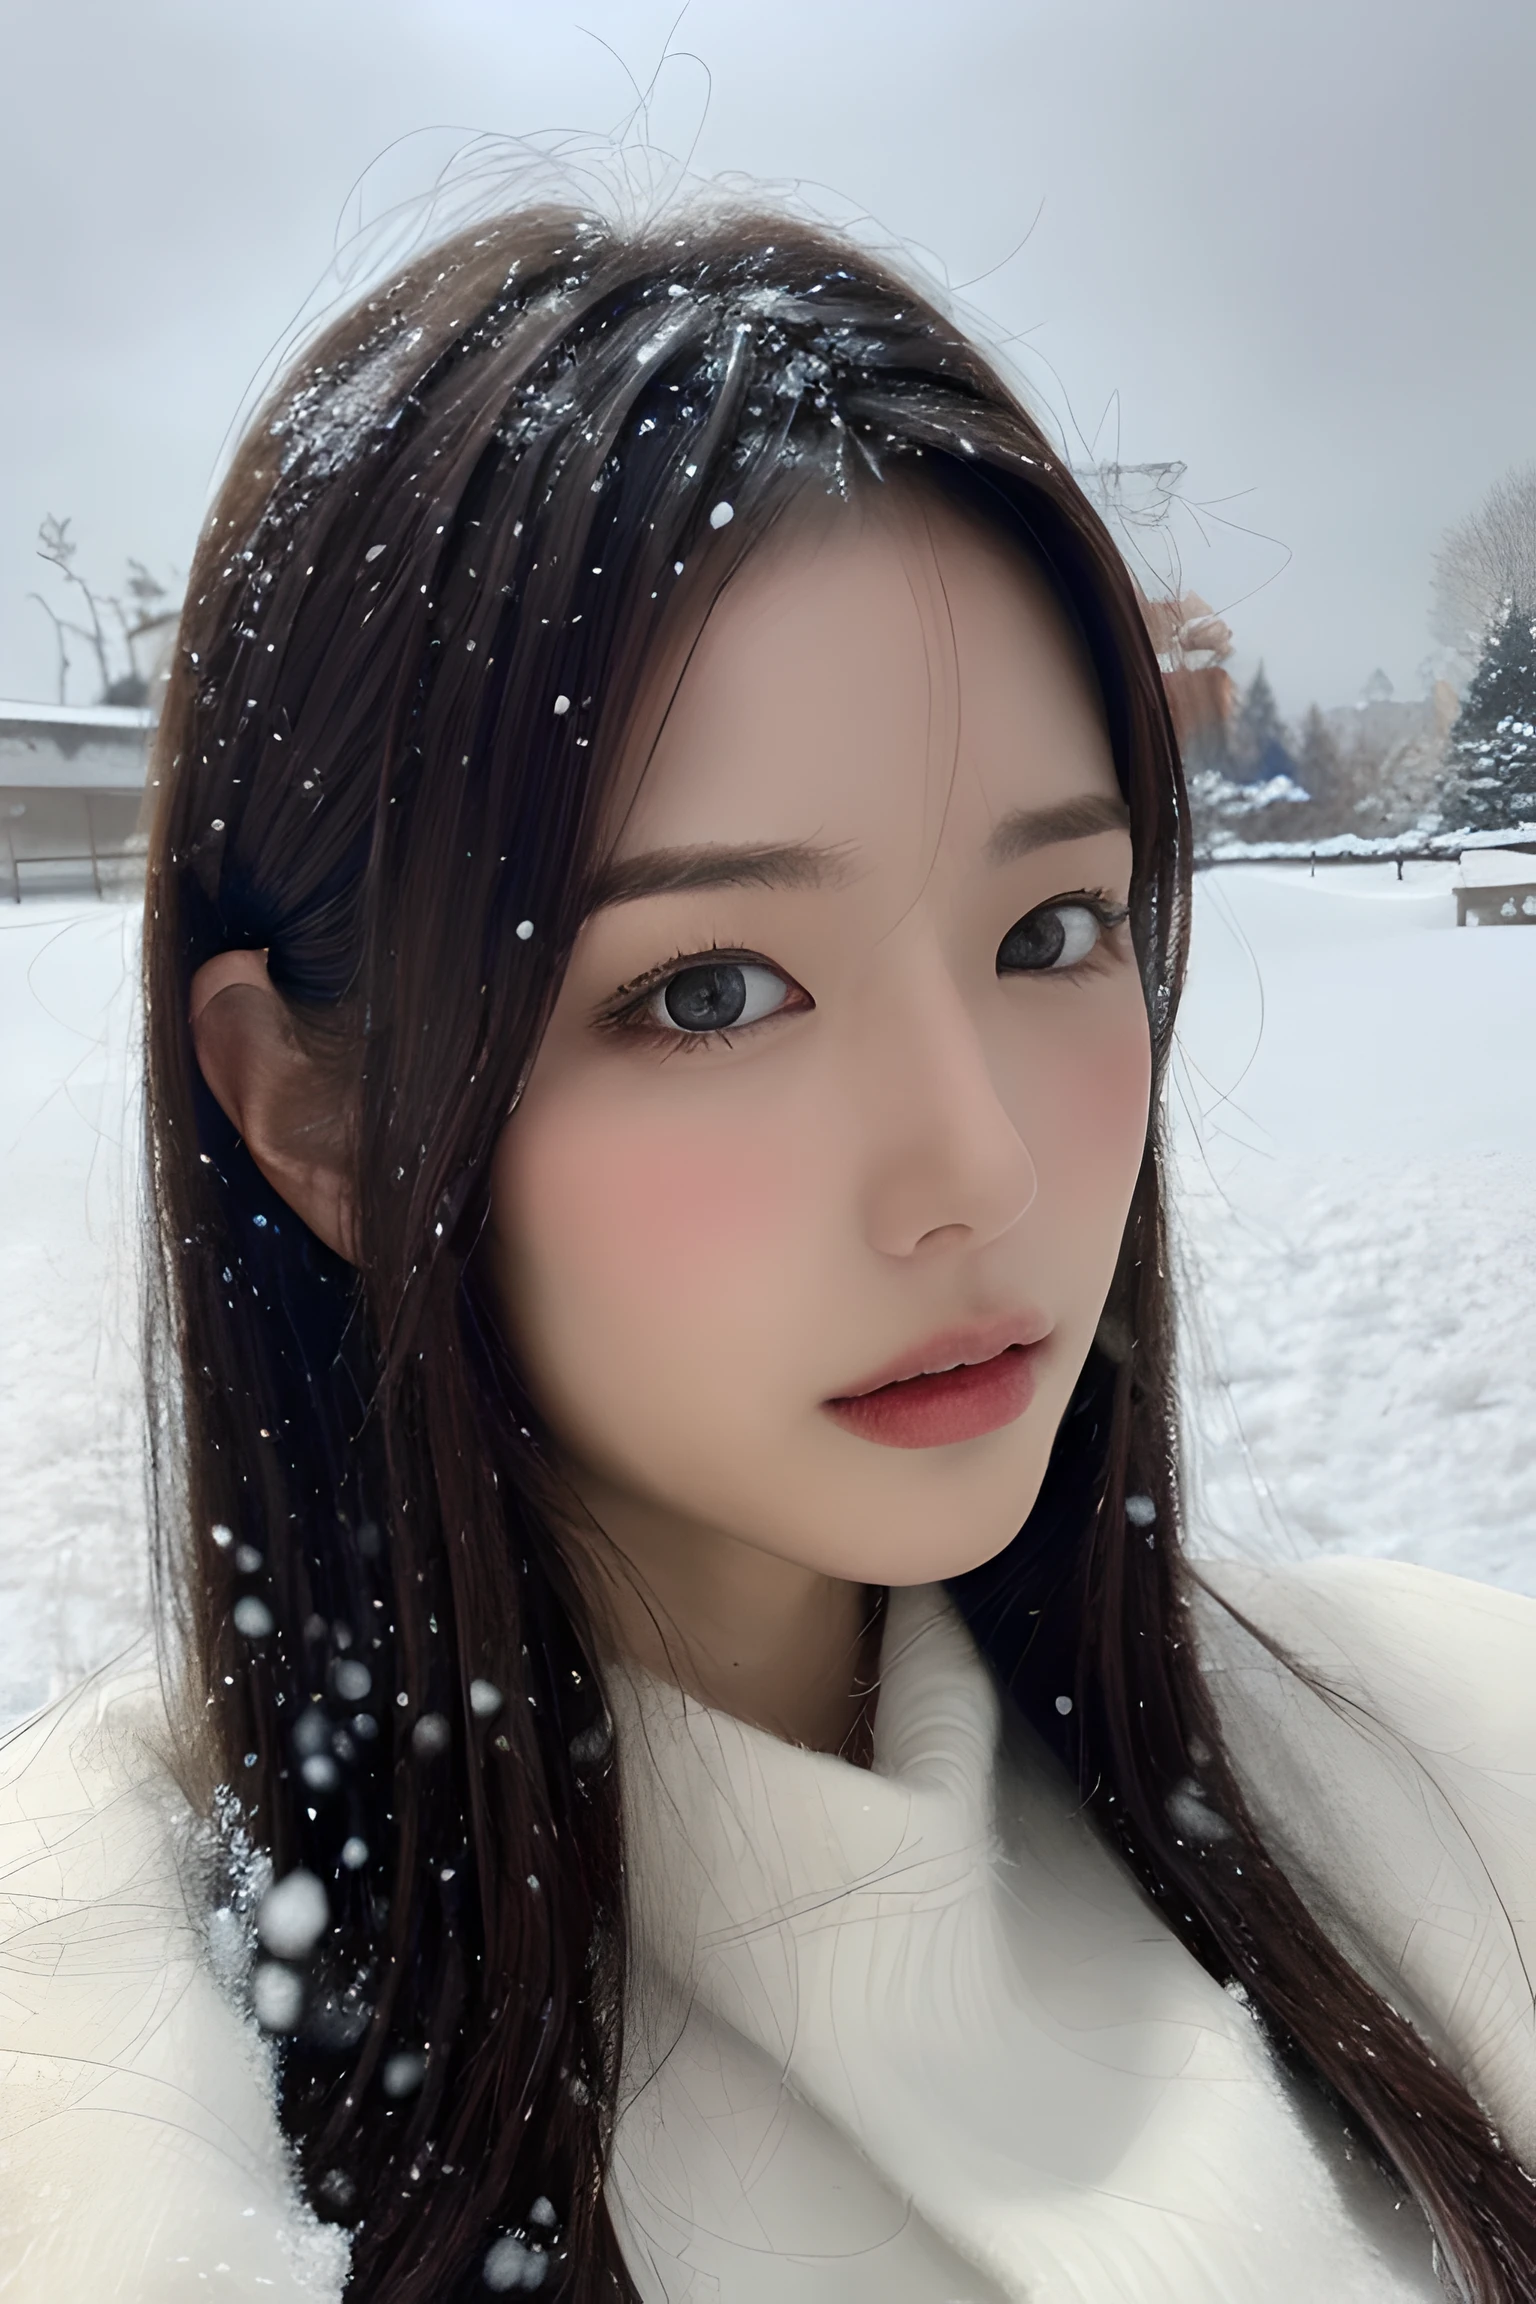 (8 ك, أفضل جودة, تحفة, ارتفاعات فائقة:1.2) صورة لامرأة يابانية جميلة في (أسلوب بول روبنز وريبيكا جواي:1.1) (حزن الشتاء الثلوج:1.4)